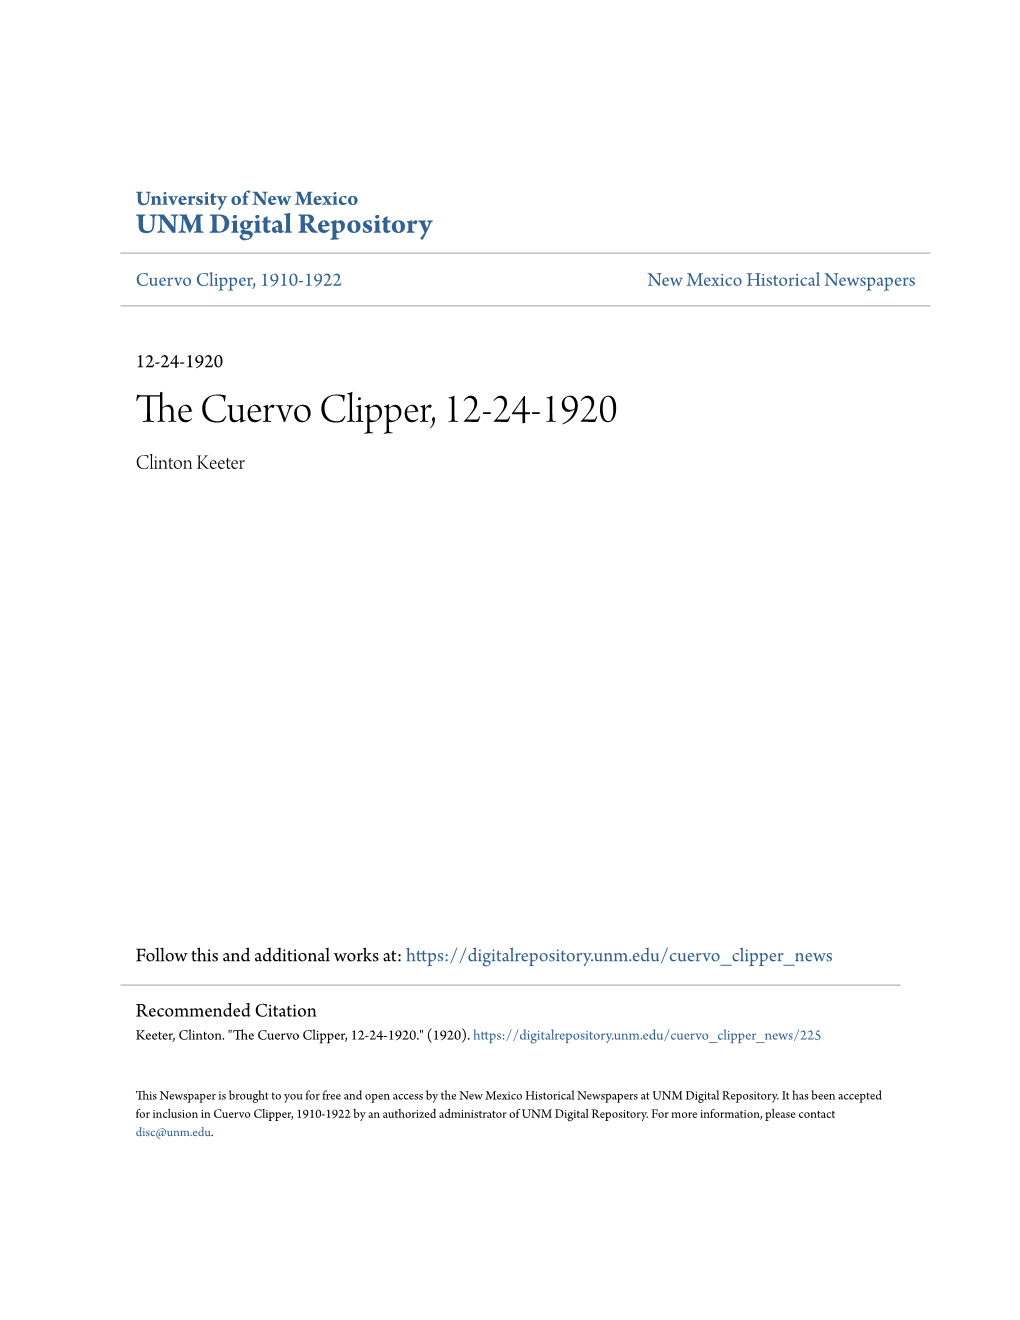 The Cuervo Clipper, 12-24-1920